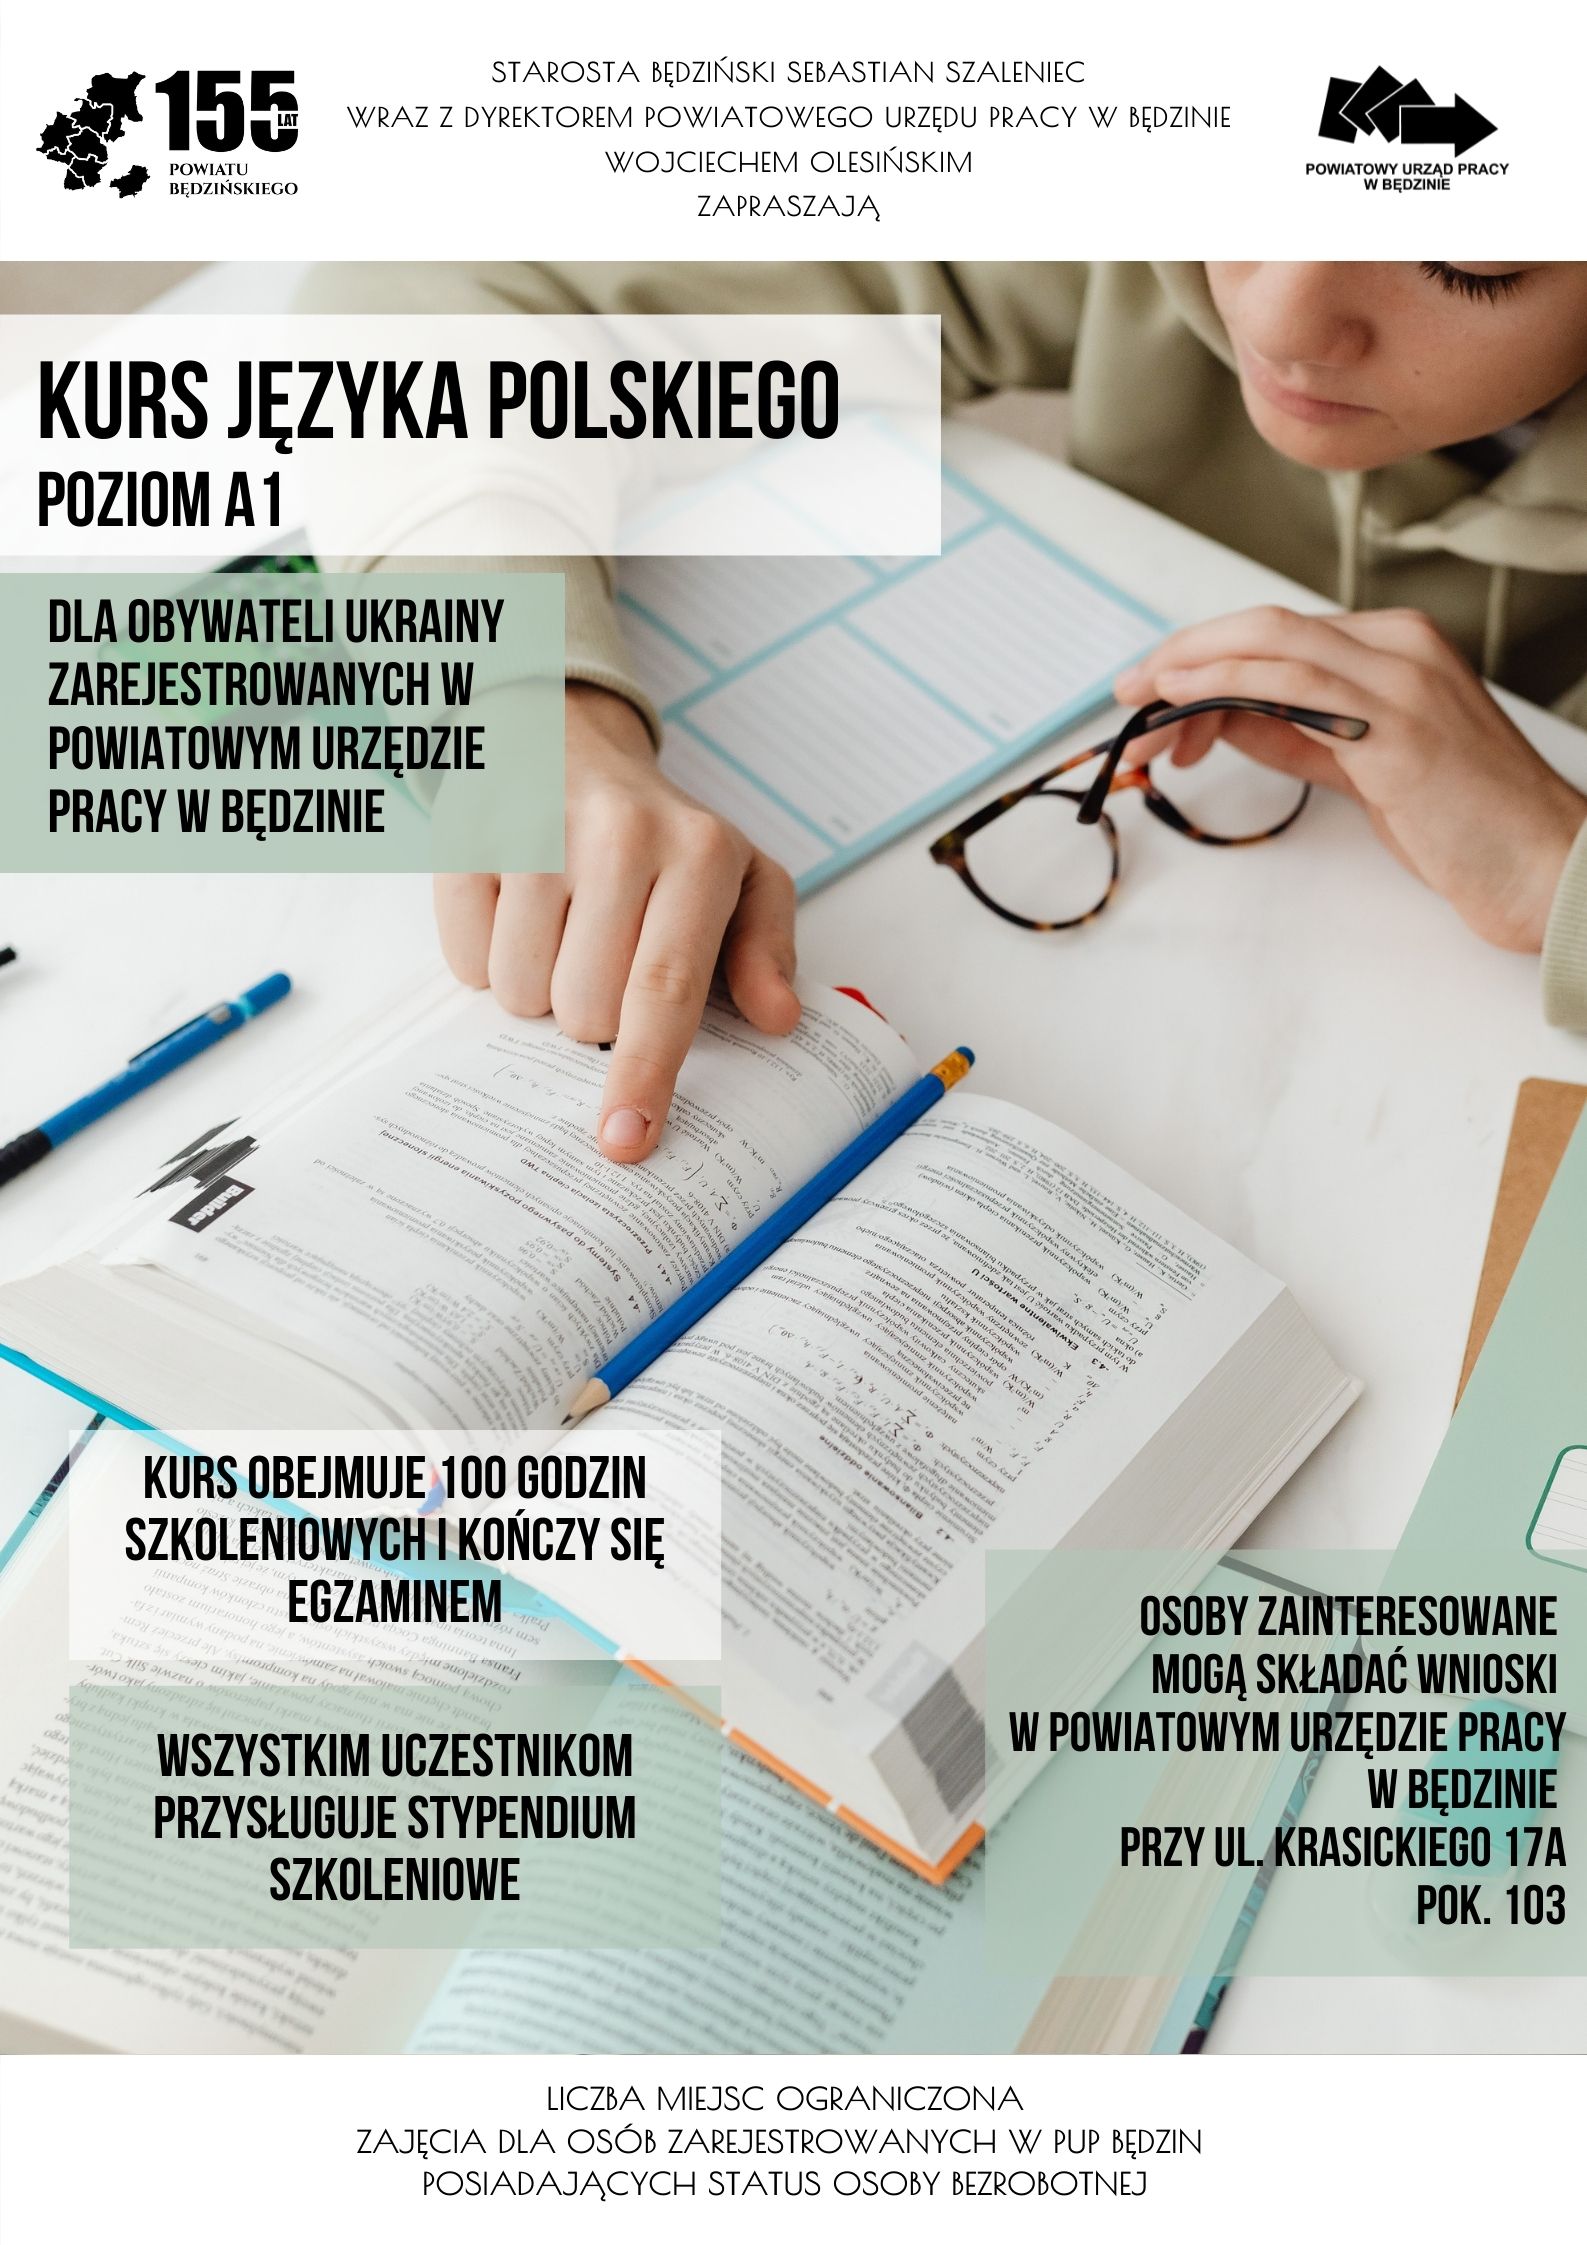 Plakat promujący kurs języka polskiego